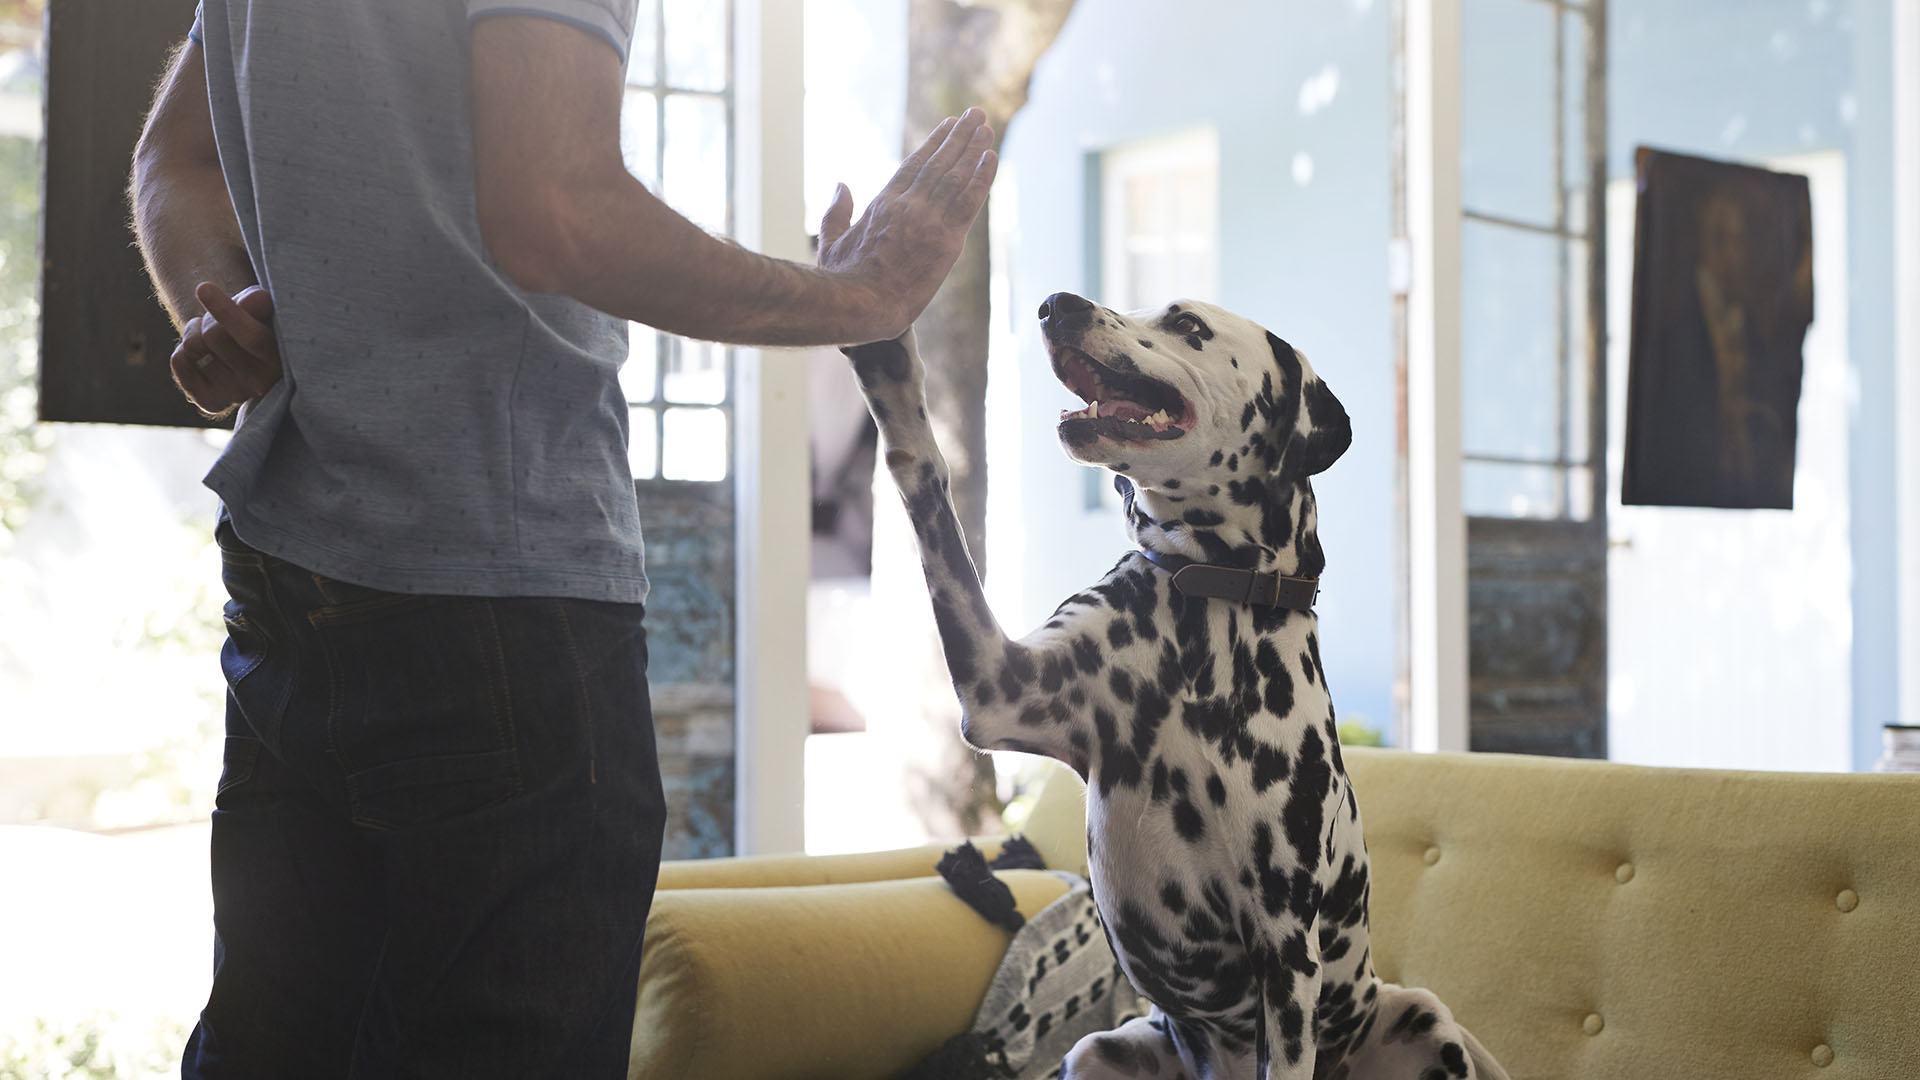 Darle caricias y premios cuando hace las cosas que nosotros deseamos, ya que eso ayuda a subordinar y entrenar a los perros (Getty Images)